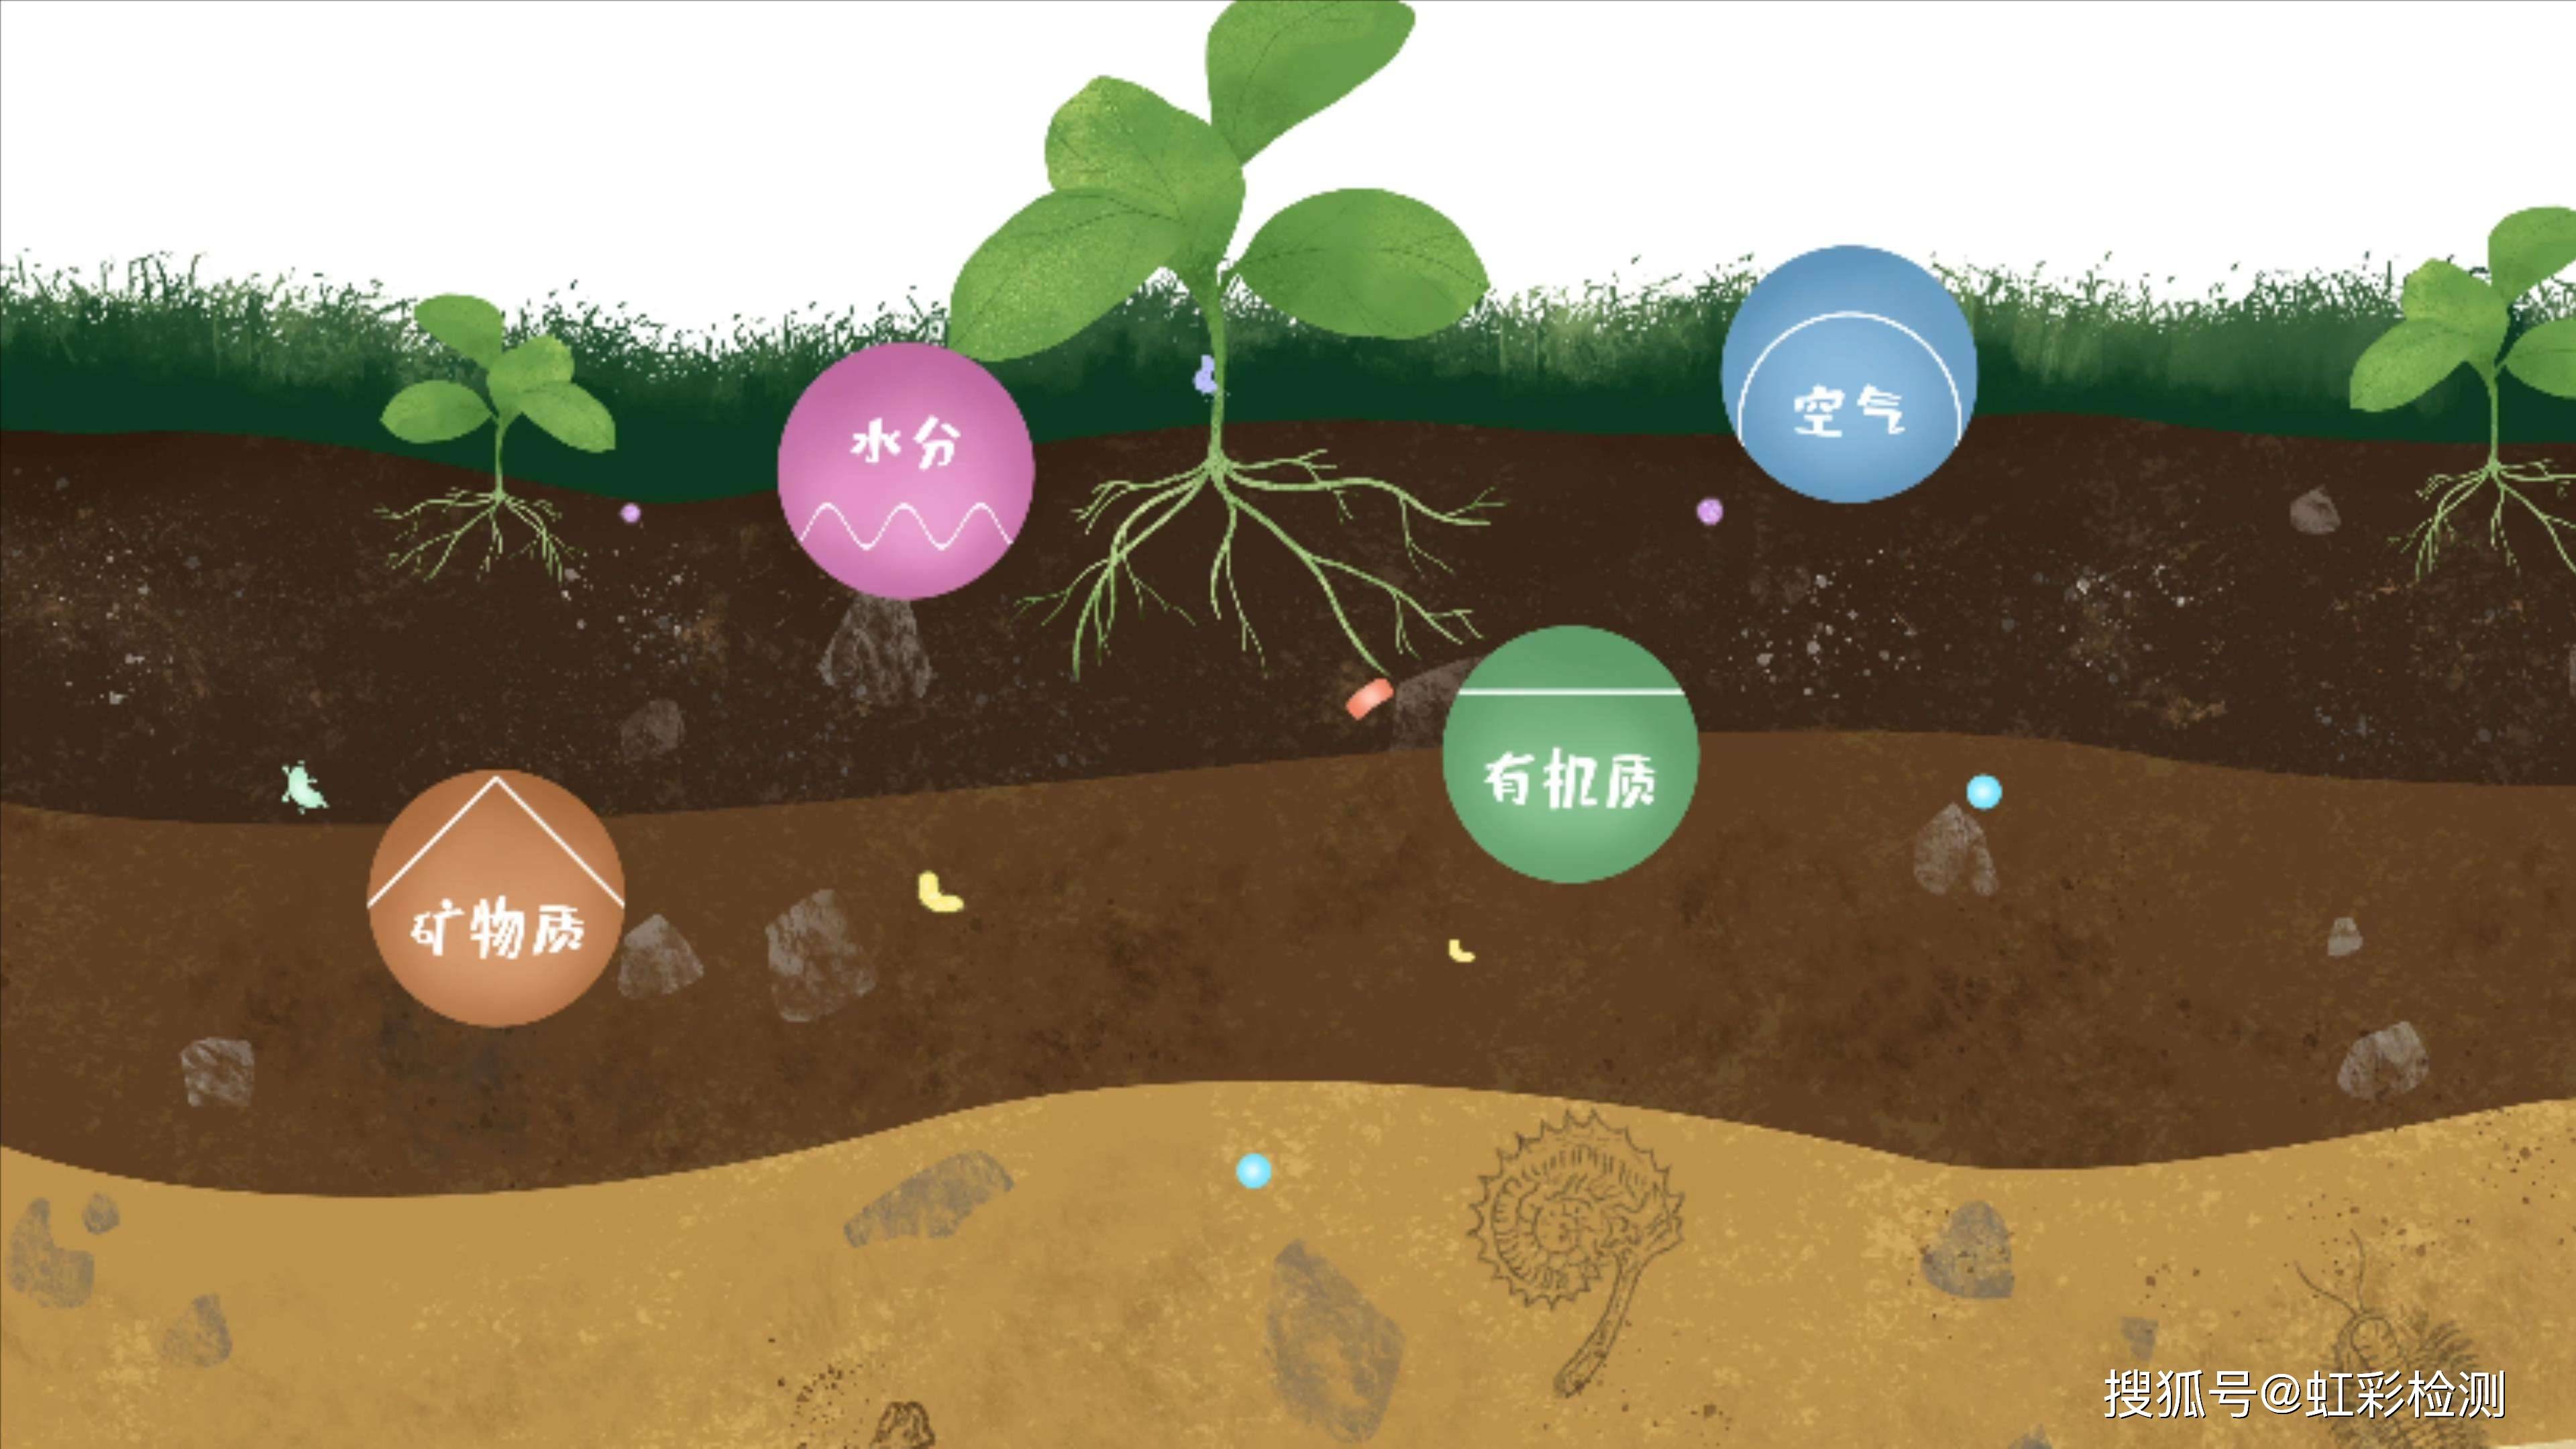 土壤微生物的分解作用图片